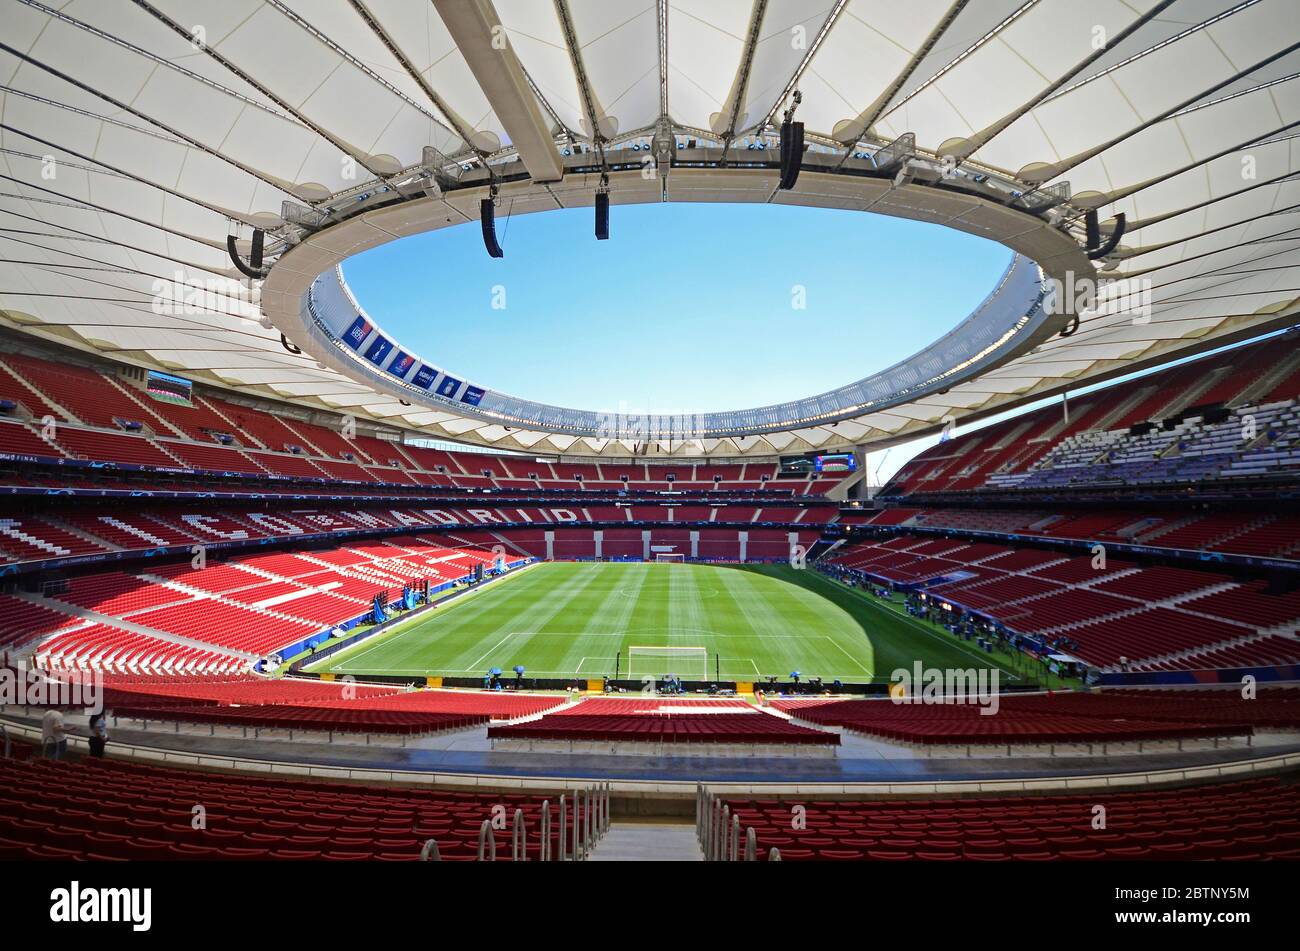 MADRID, SPANIEN - 31. MAI 2019: Gesamtansicht des Spielorts, der einen Tag vor dem UEFA Champions League-Finale 2018/19 zwischen Tottenham Hotspur (England) und Liverpool FC (England) in Wanda Metropolitano abgebildet ist. Stockfoto